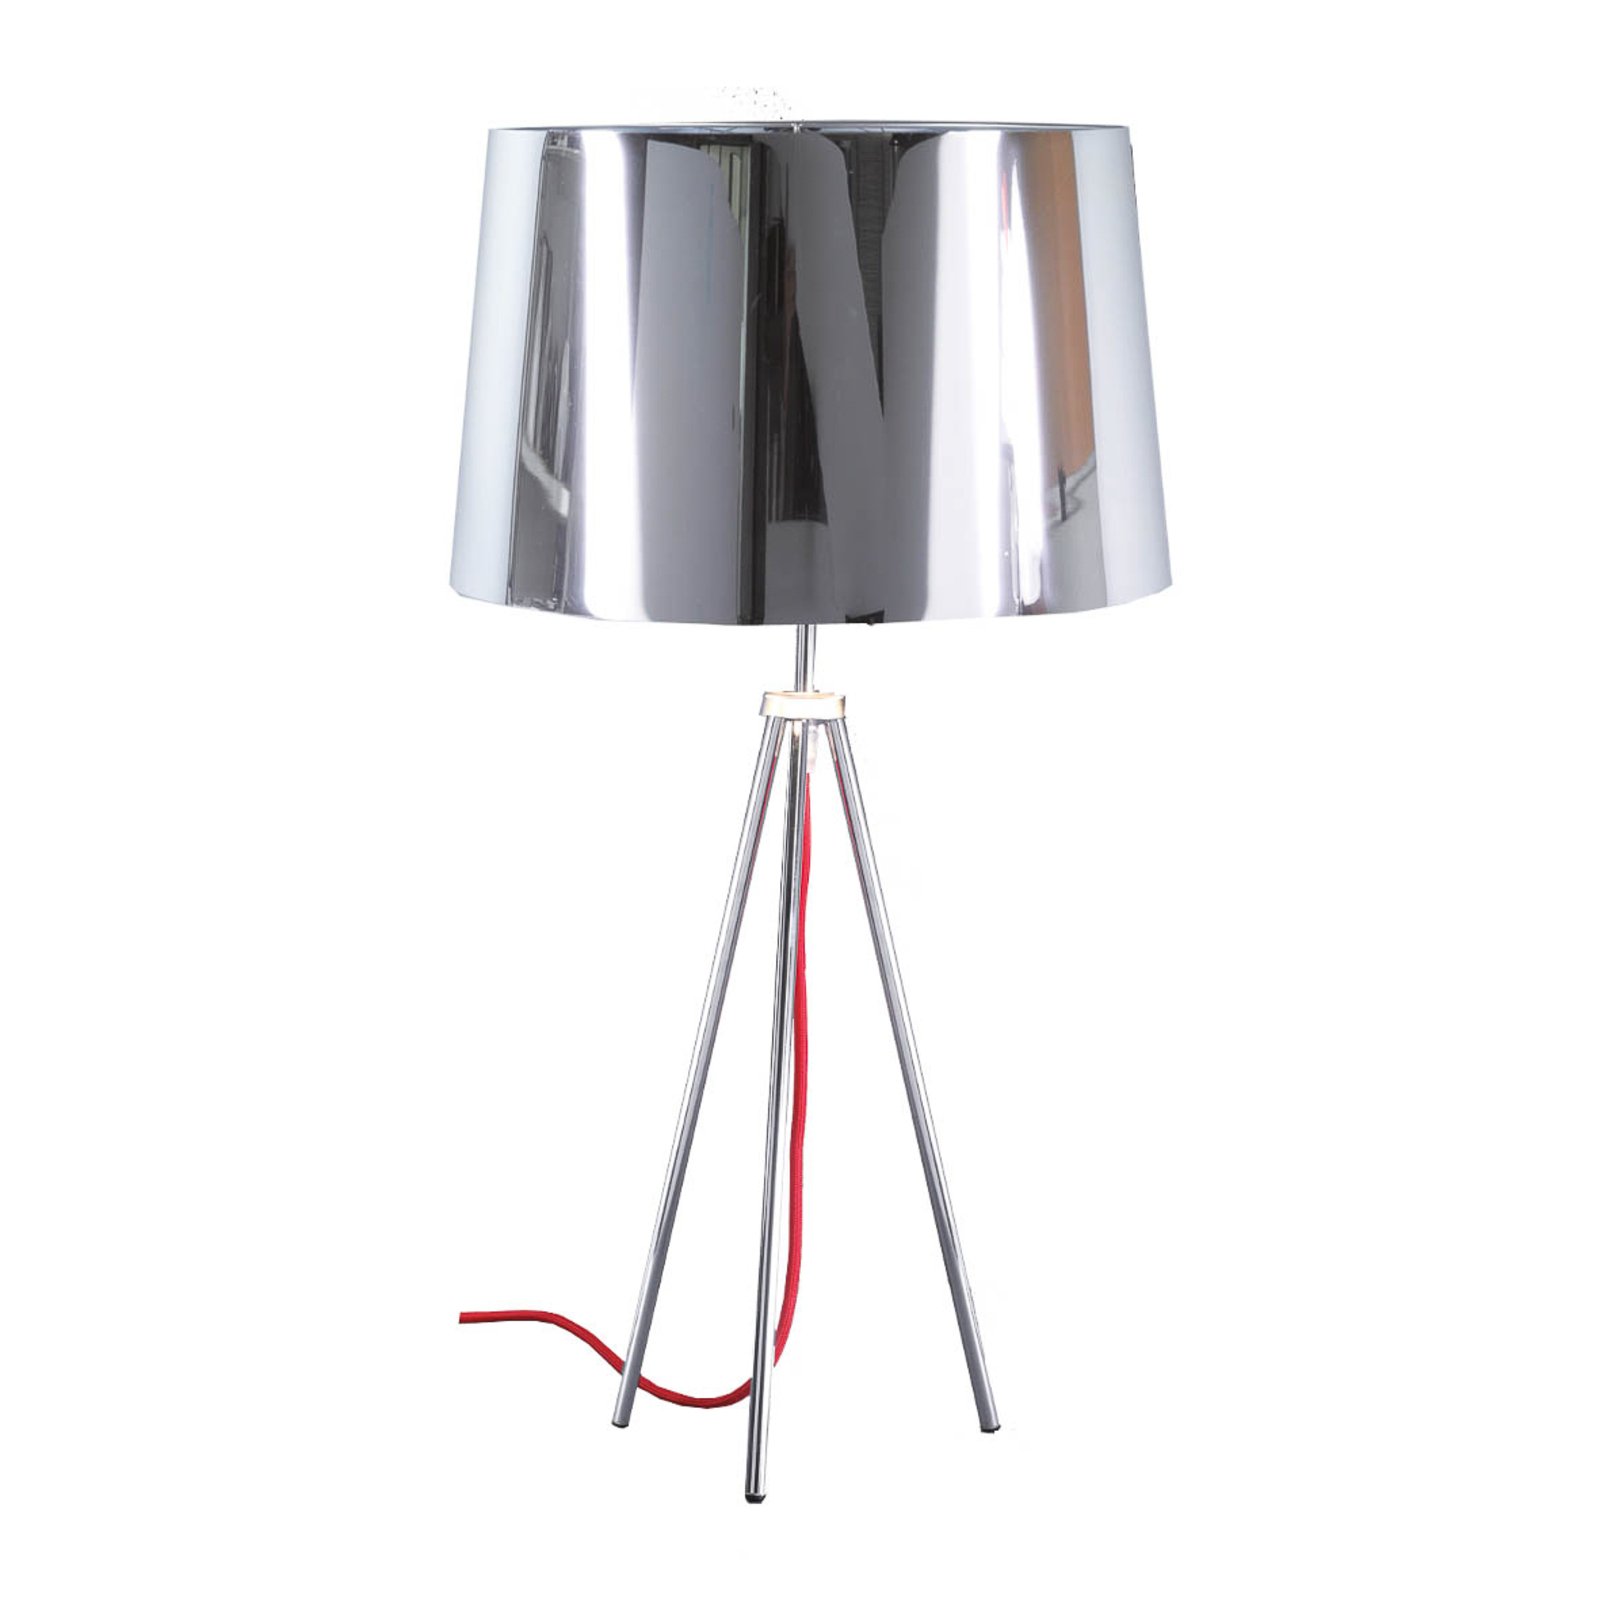 Aluminor Tropic lámpara de mesa cromo, cable rojo